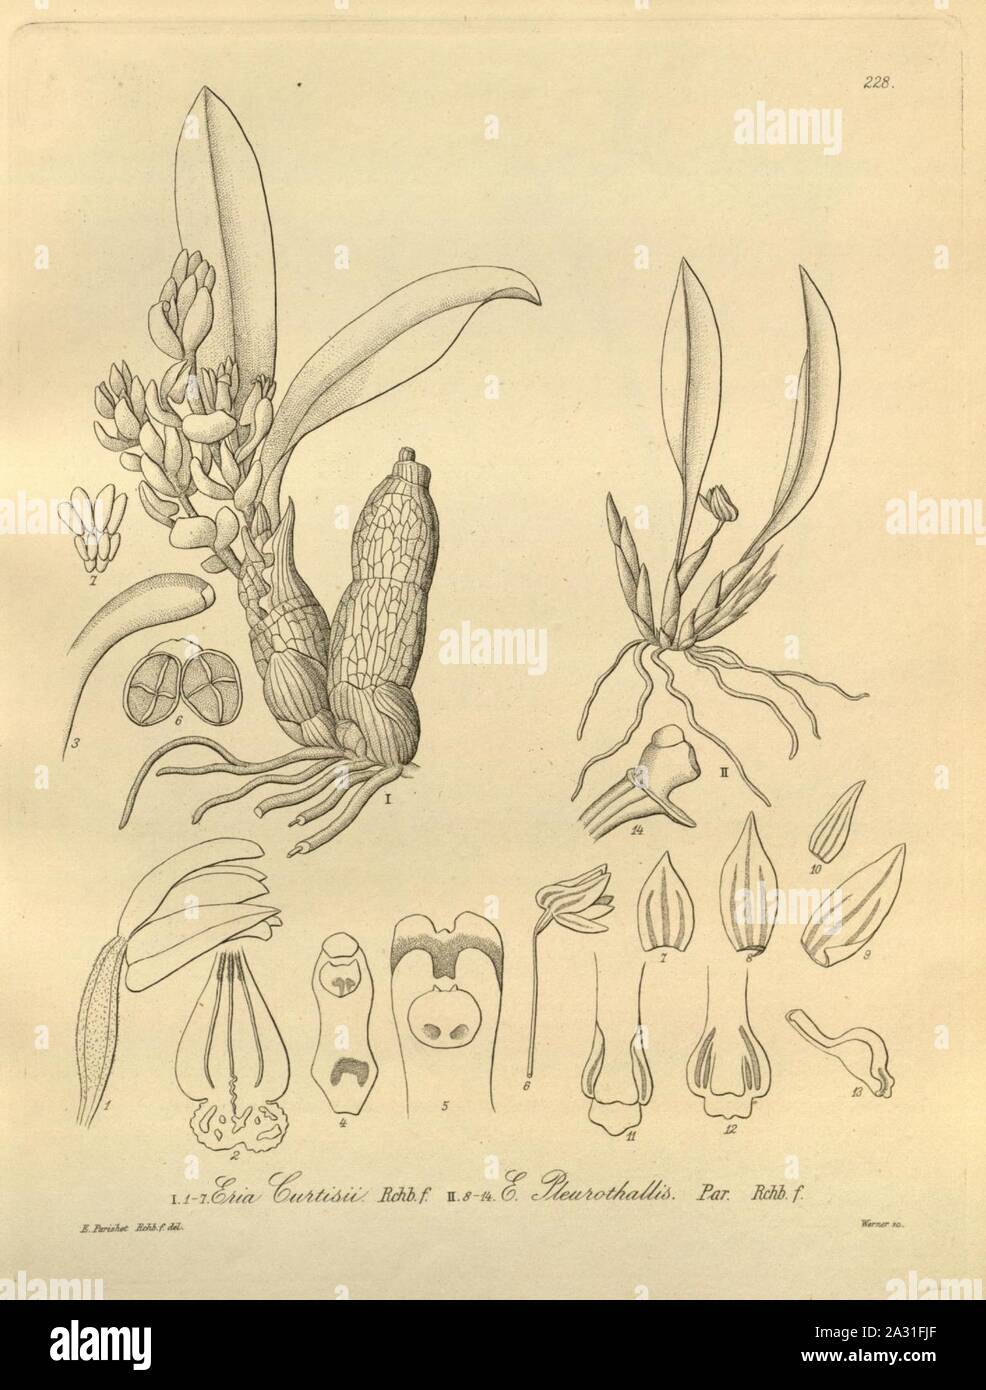 Eria curtisii - Ceratostylis pleurothallis (as Eria pleurothallis) - Xenia 3 pl 228. Stock Photo